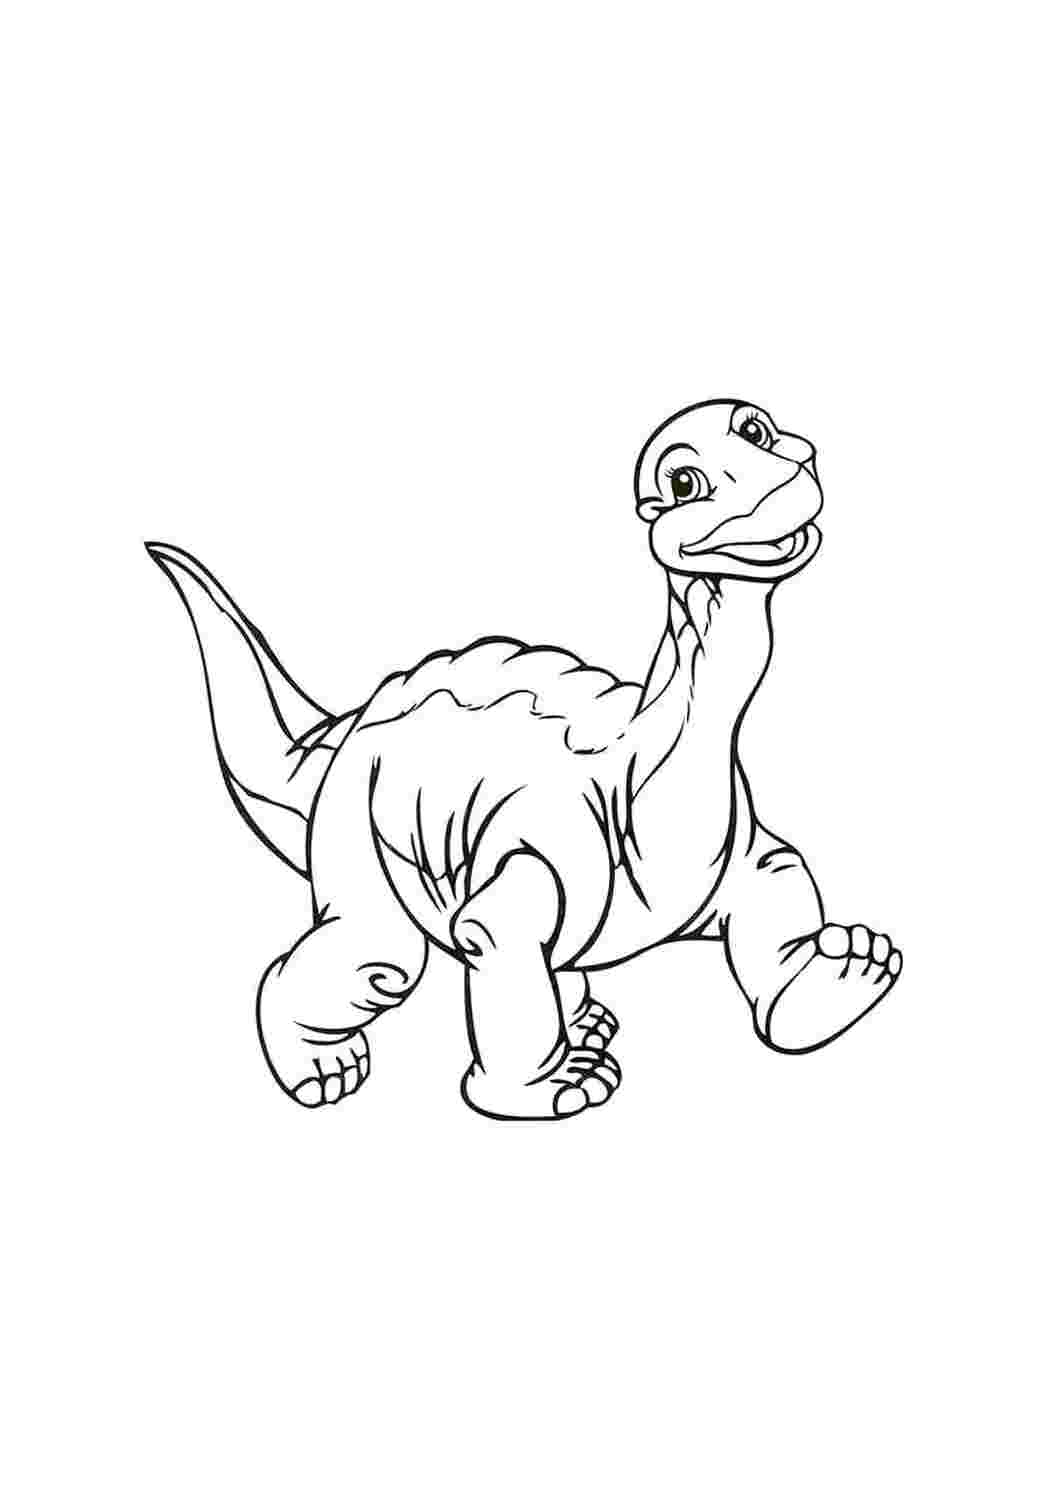 Раскраски Раскраски динозавр, радостный дно, дино улыбается,  динозавр динозавр